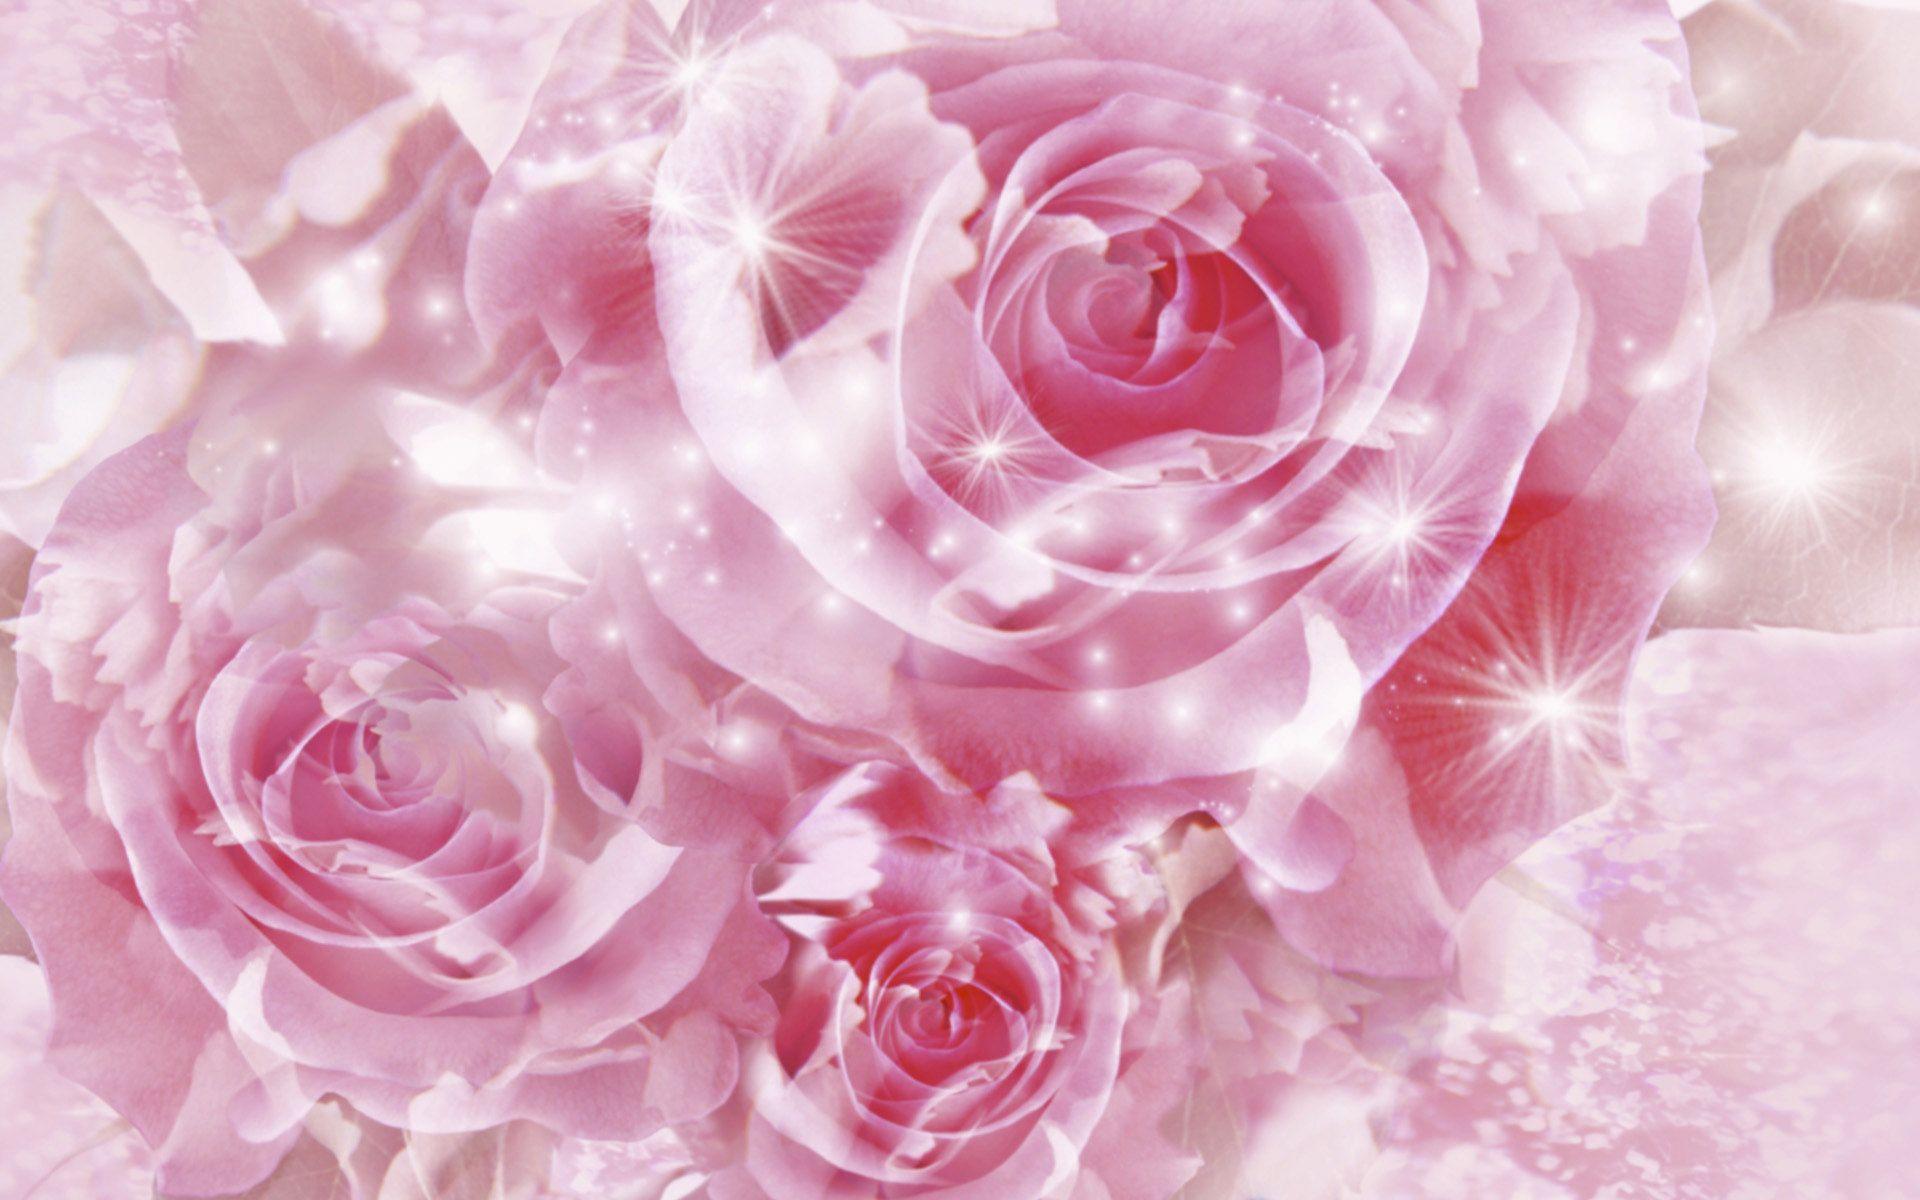 Hình nền hoa hồng: Cùng đắm chìm vào không gian nở rộ hoa hồng tươi tắn và đầy sức sống với hình nền hoa hồng tuyệt đẹp. Bạn sẽ cảm nhận được sự dịu mát và thư giãn khi nhìn ngắm những bông hoa nhỏ xinh chất đầy mê hoặc này.